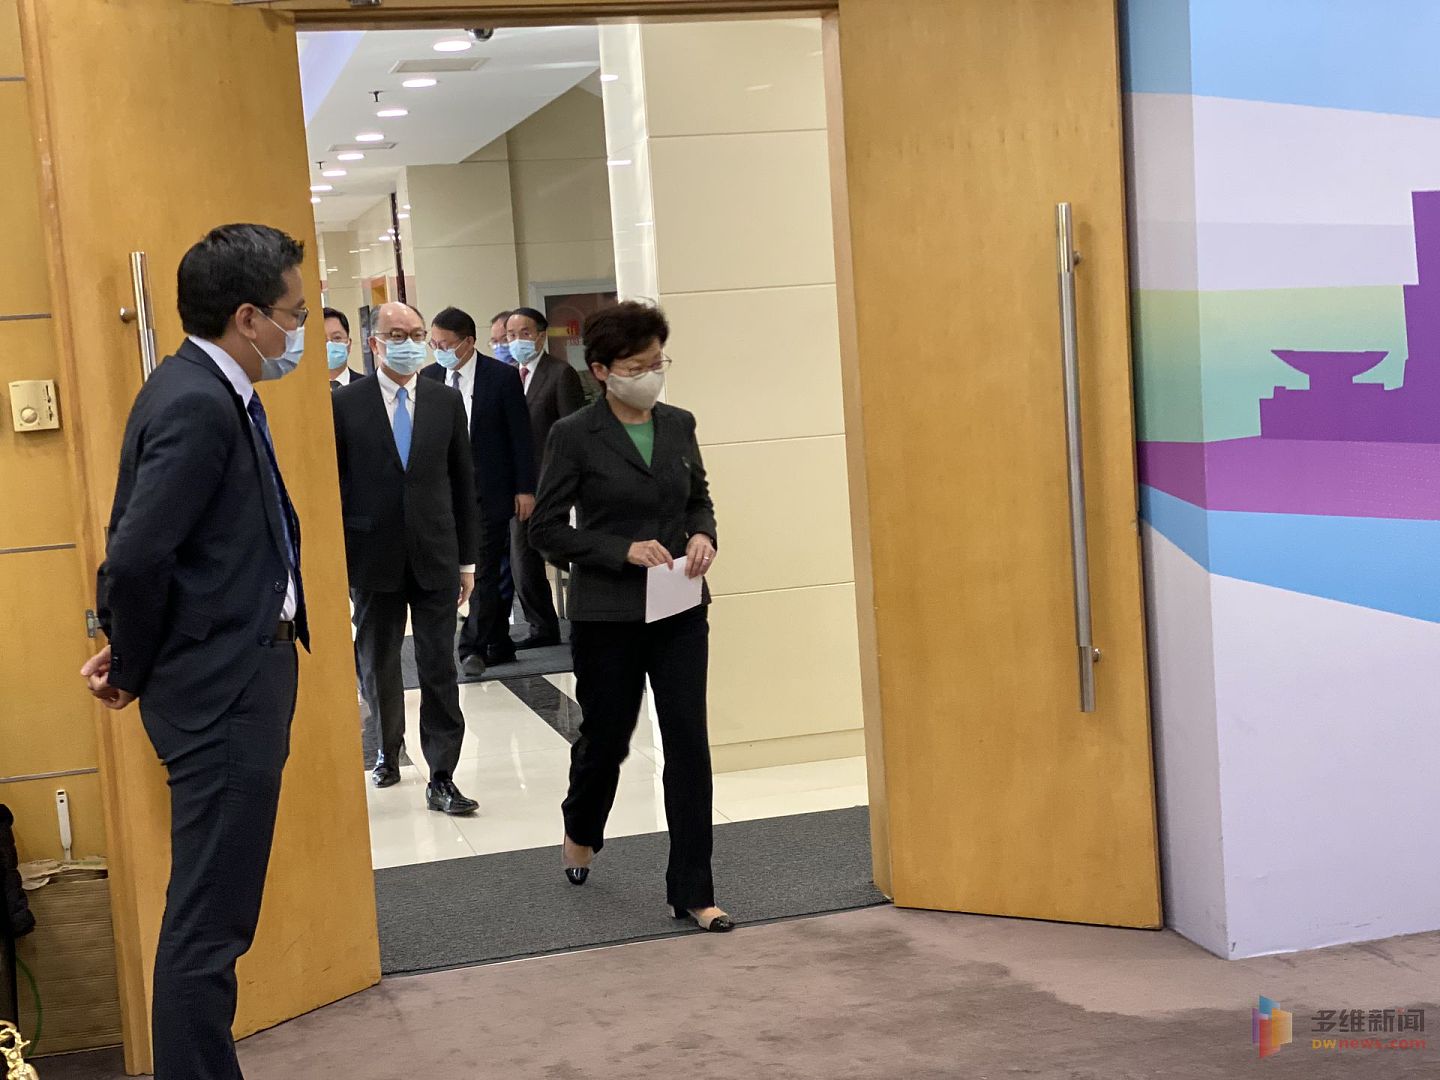 香港特区行政长官林郑月娥于11月3日至7日访问北京、广州和深圳。（多维新闻）